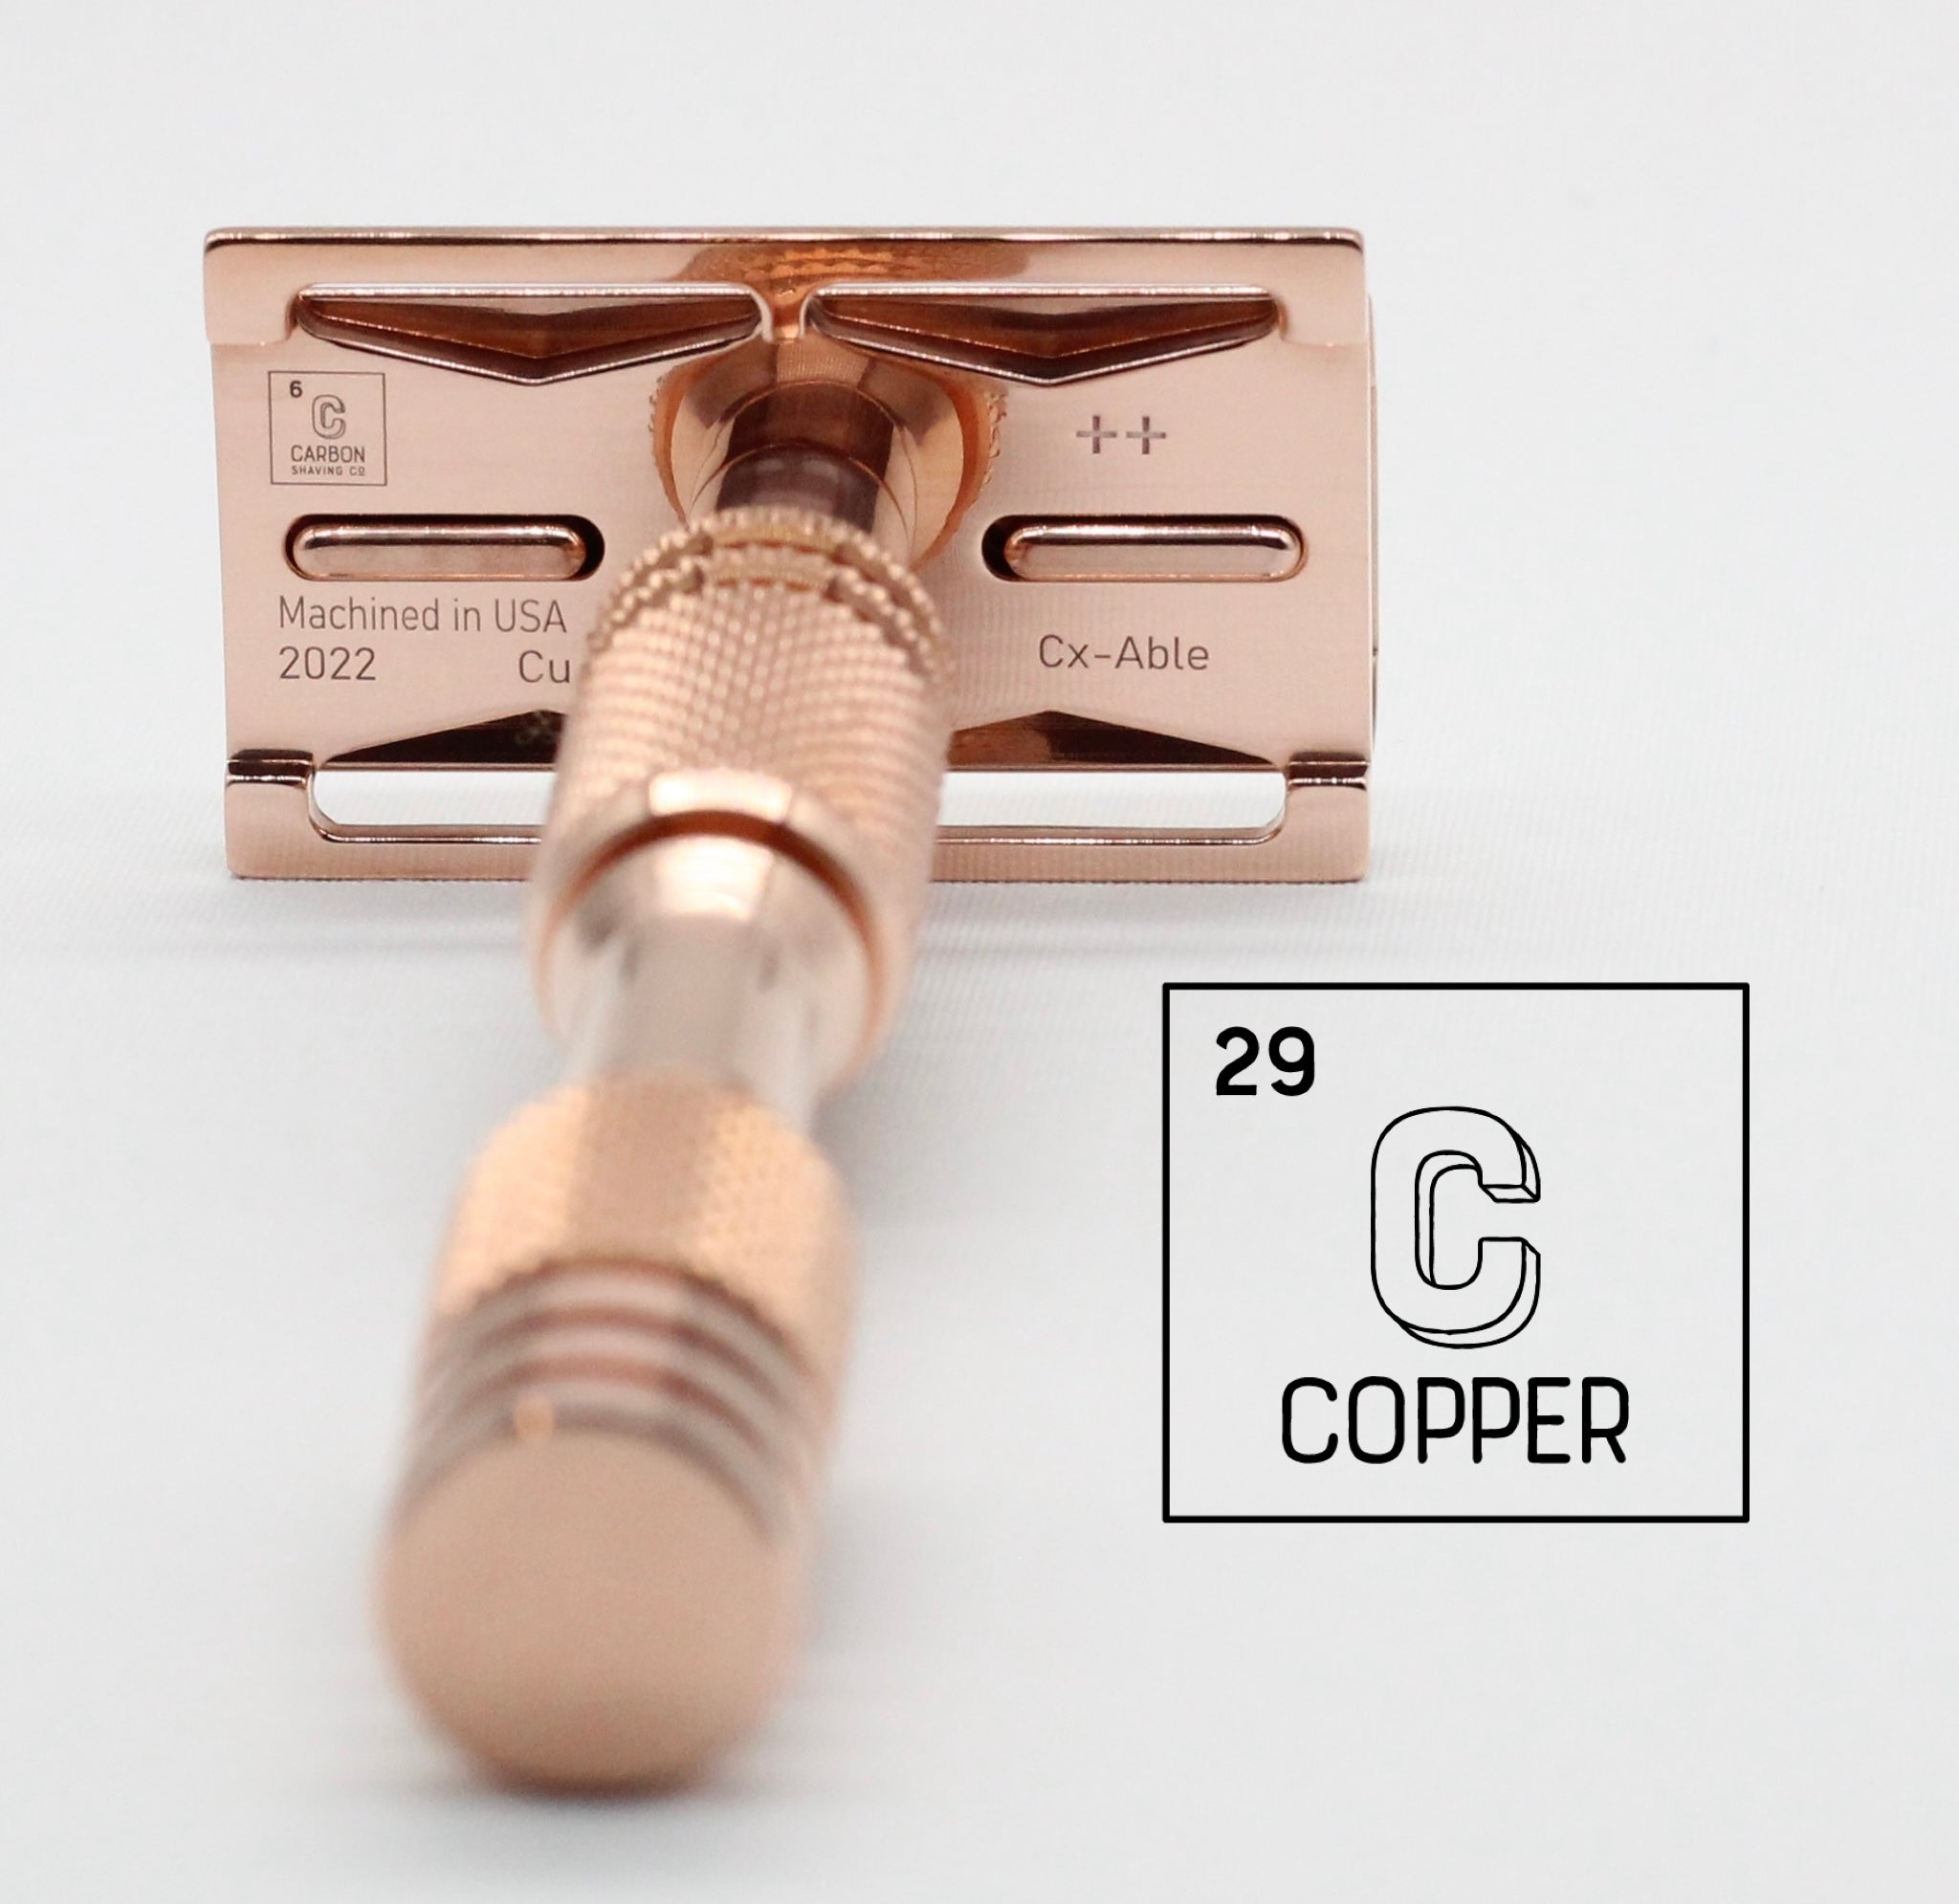 The Copper Safety Razor